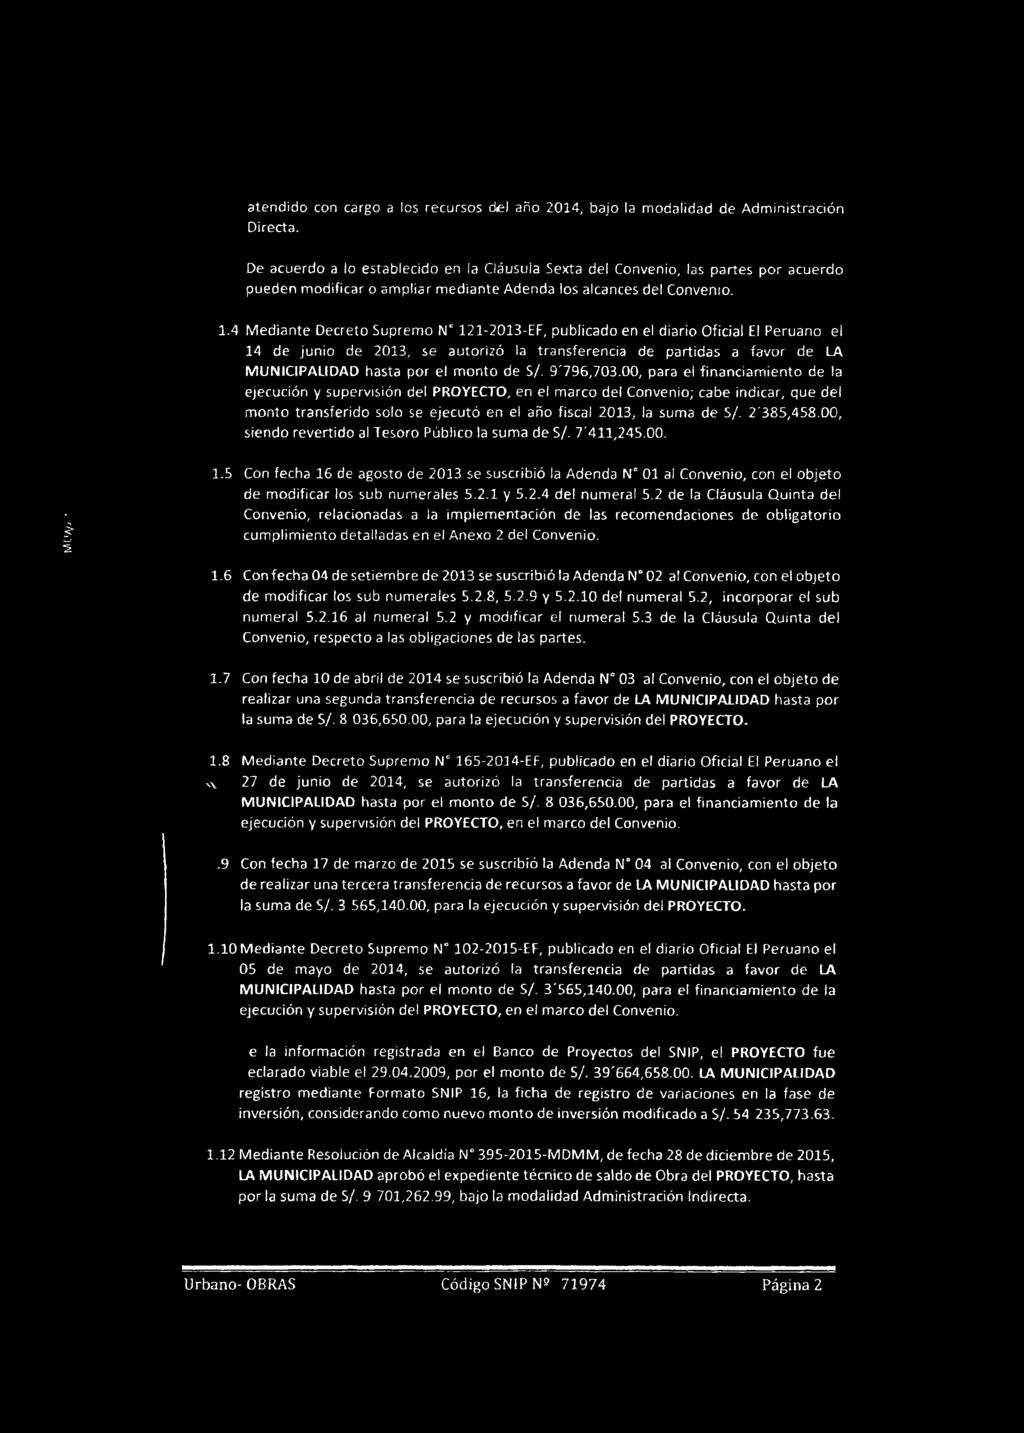 4 Mediante Decreto Supremo Nc 121-2013-EF, publicado en el diario Oficial El Peruano el 14 de junio de 2013, se autorizó la transferencia de partidas a favor de LA MUNICIPALIDAD hasta por el monto de